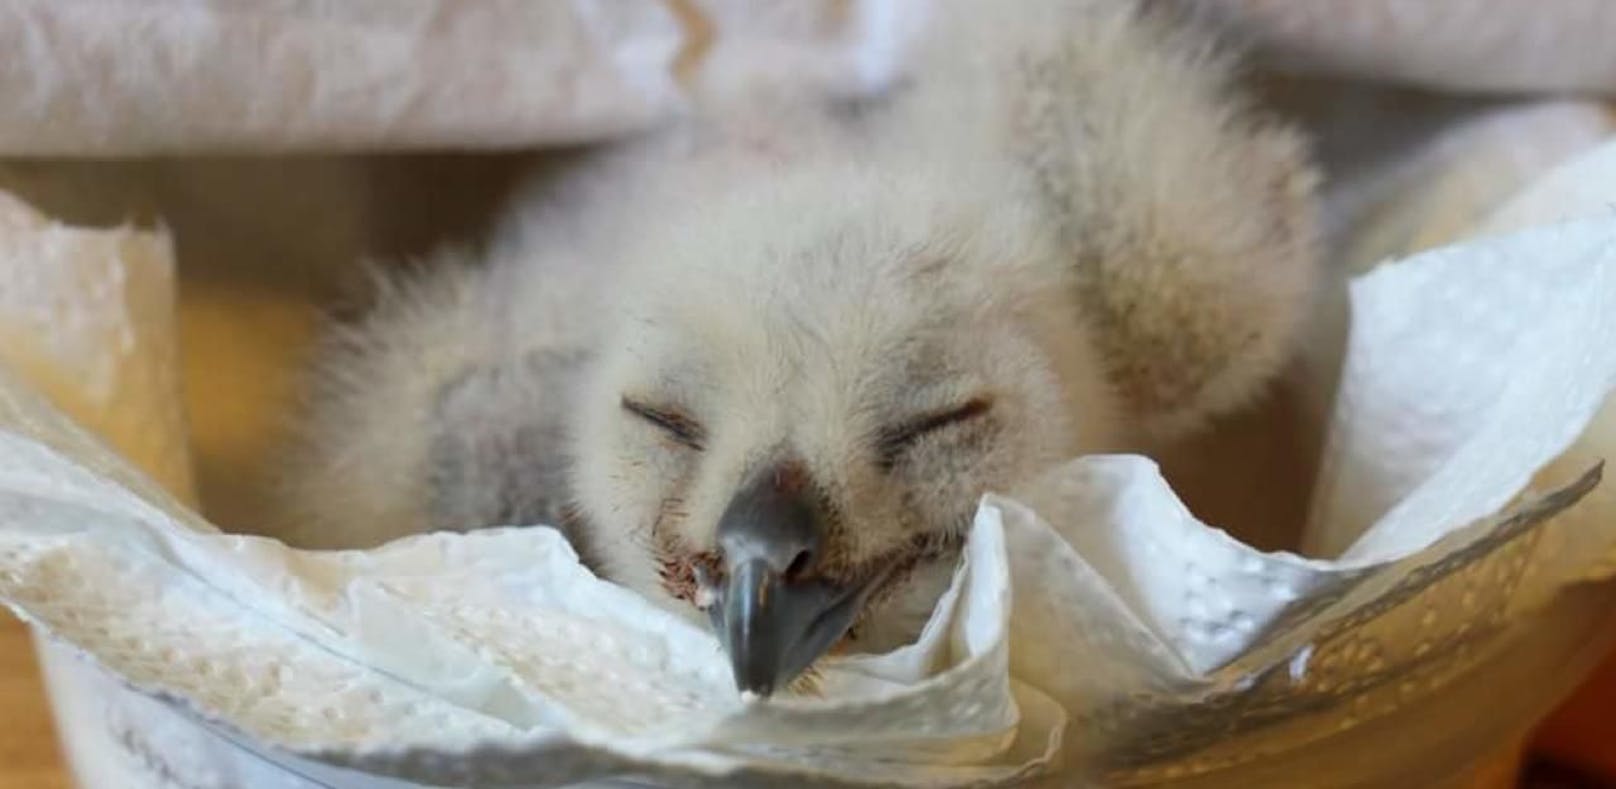 Vogel fiel aus dem Nest: Baby-Uhu wurde gerettet